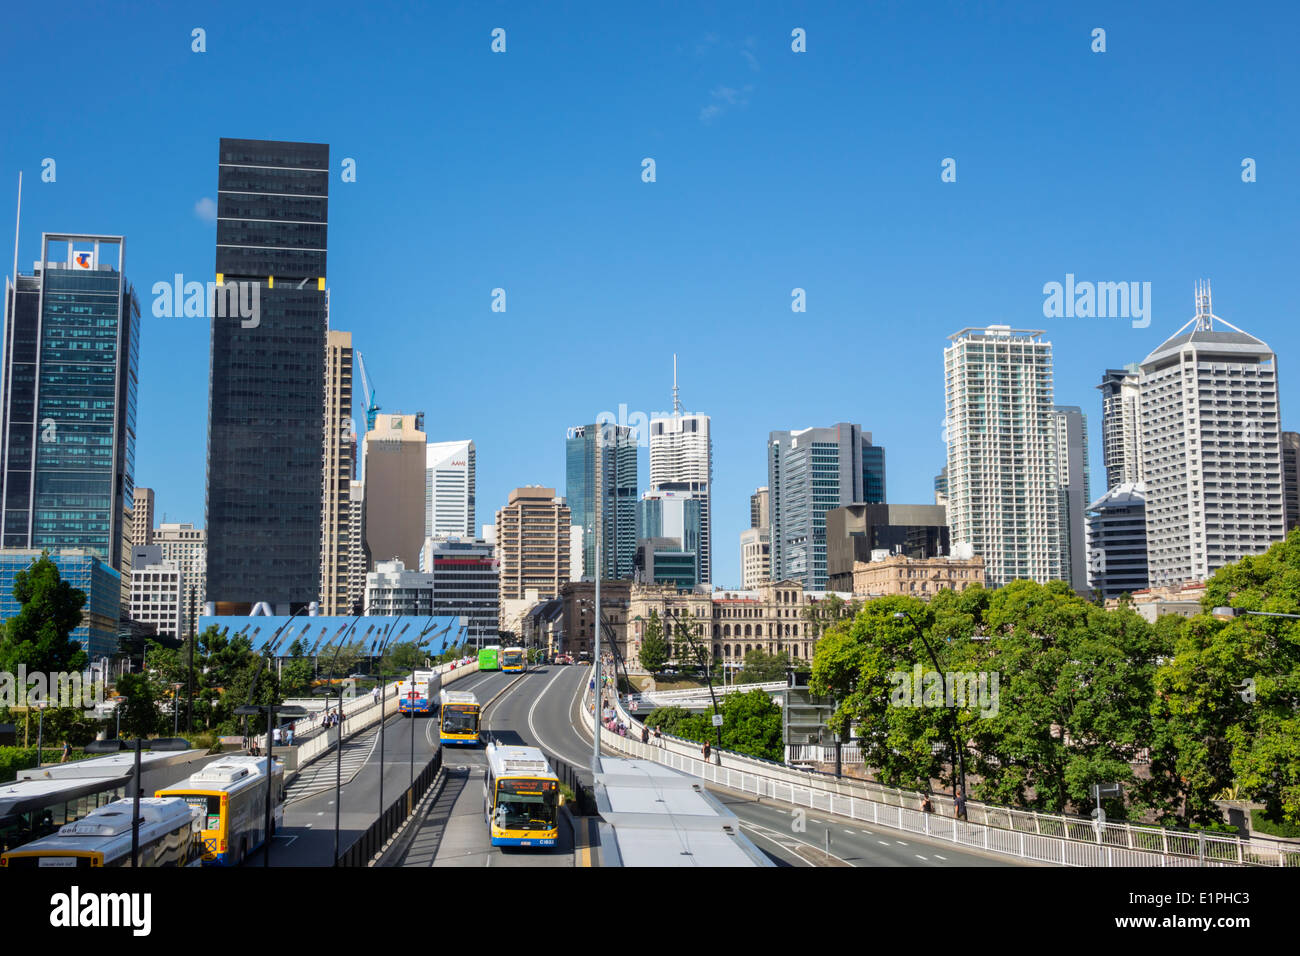 Brisbane Australia CBD, Victoria Bridge, Centro Culturale, centro, stazione degli autobus, skyline della città, grattacieli, edifici, AU140314092 Foto Stock